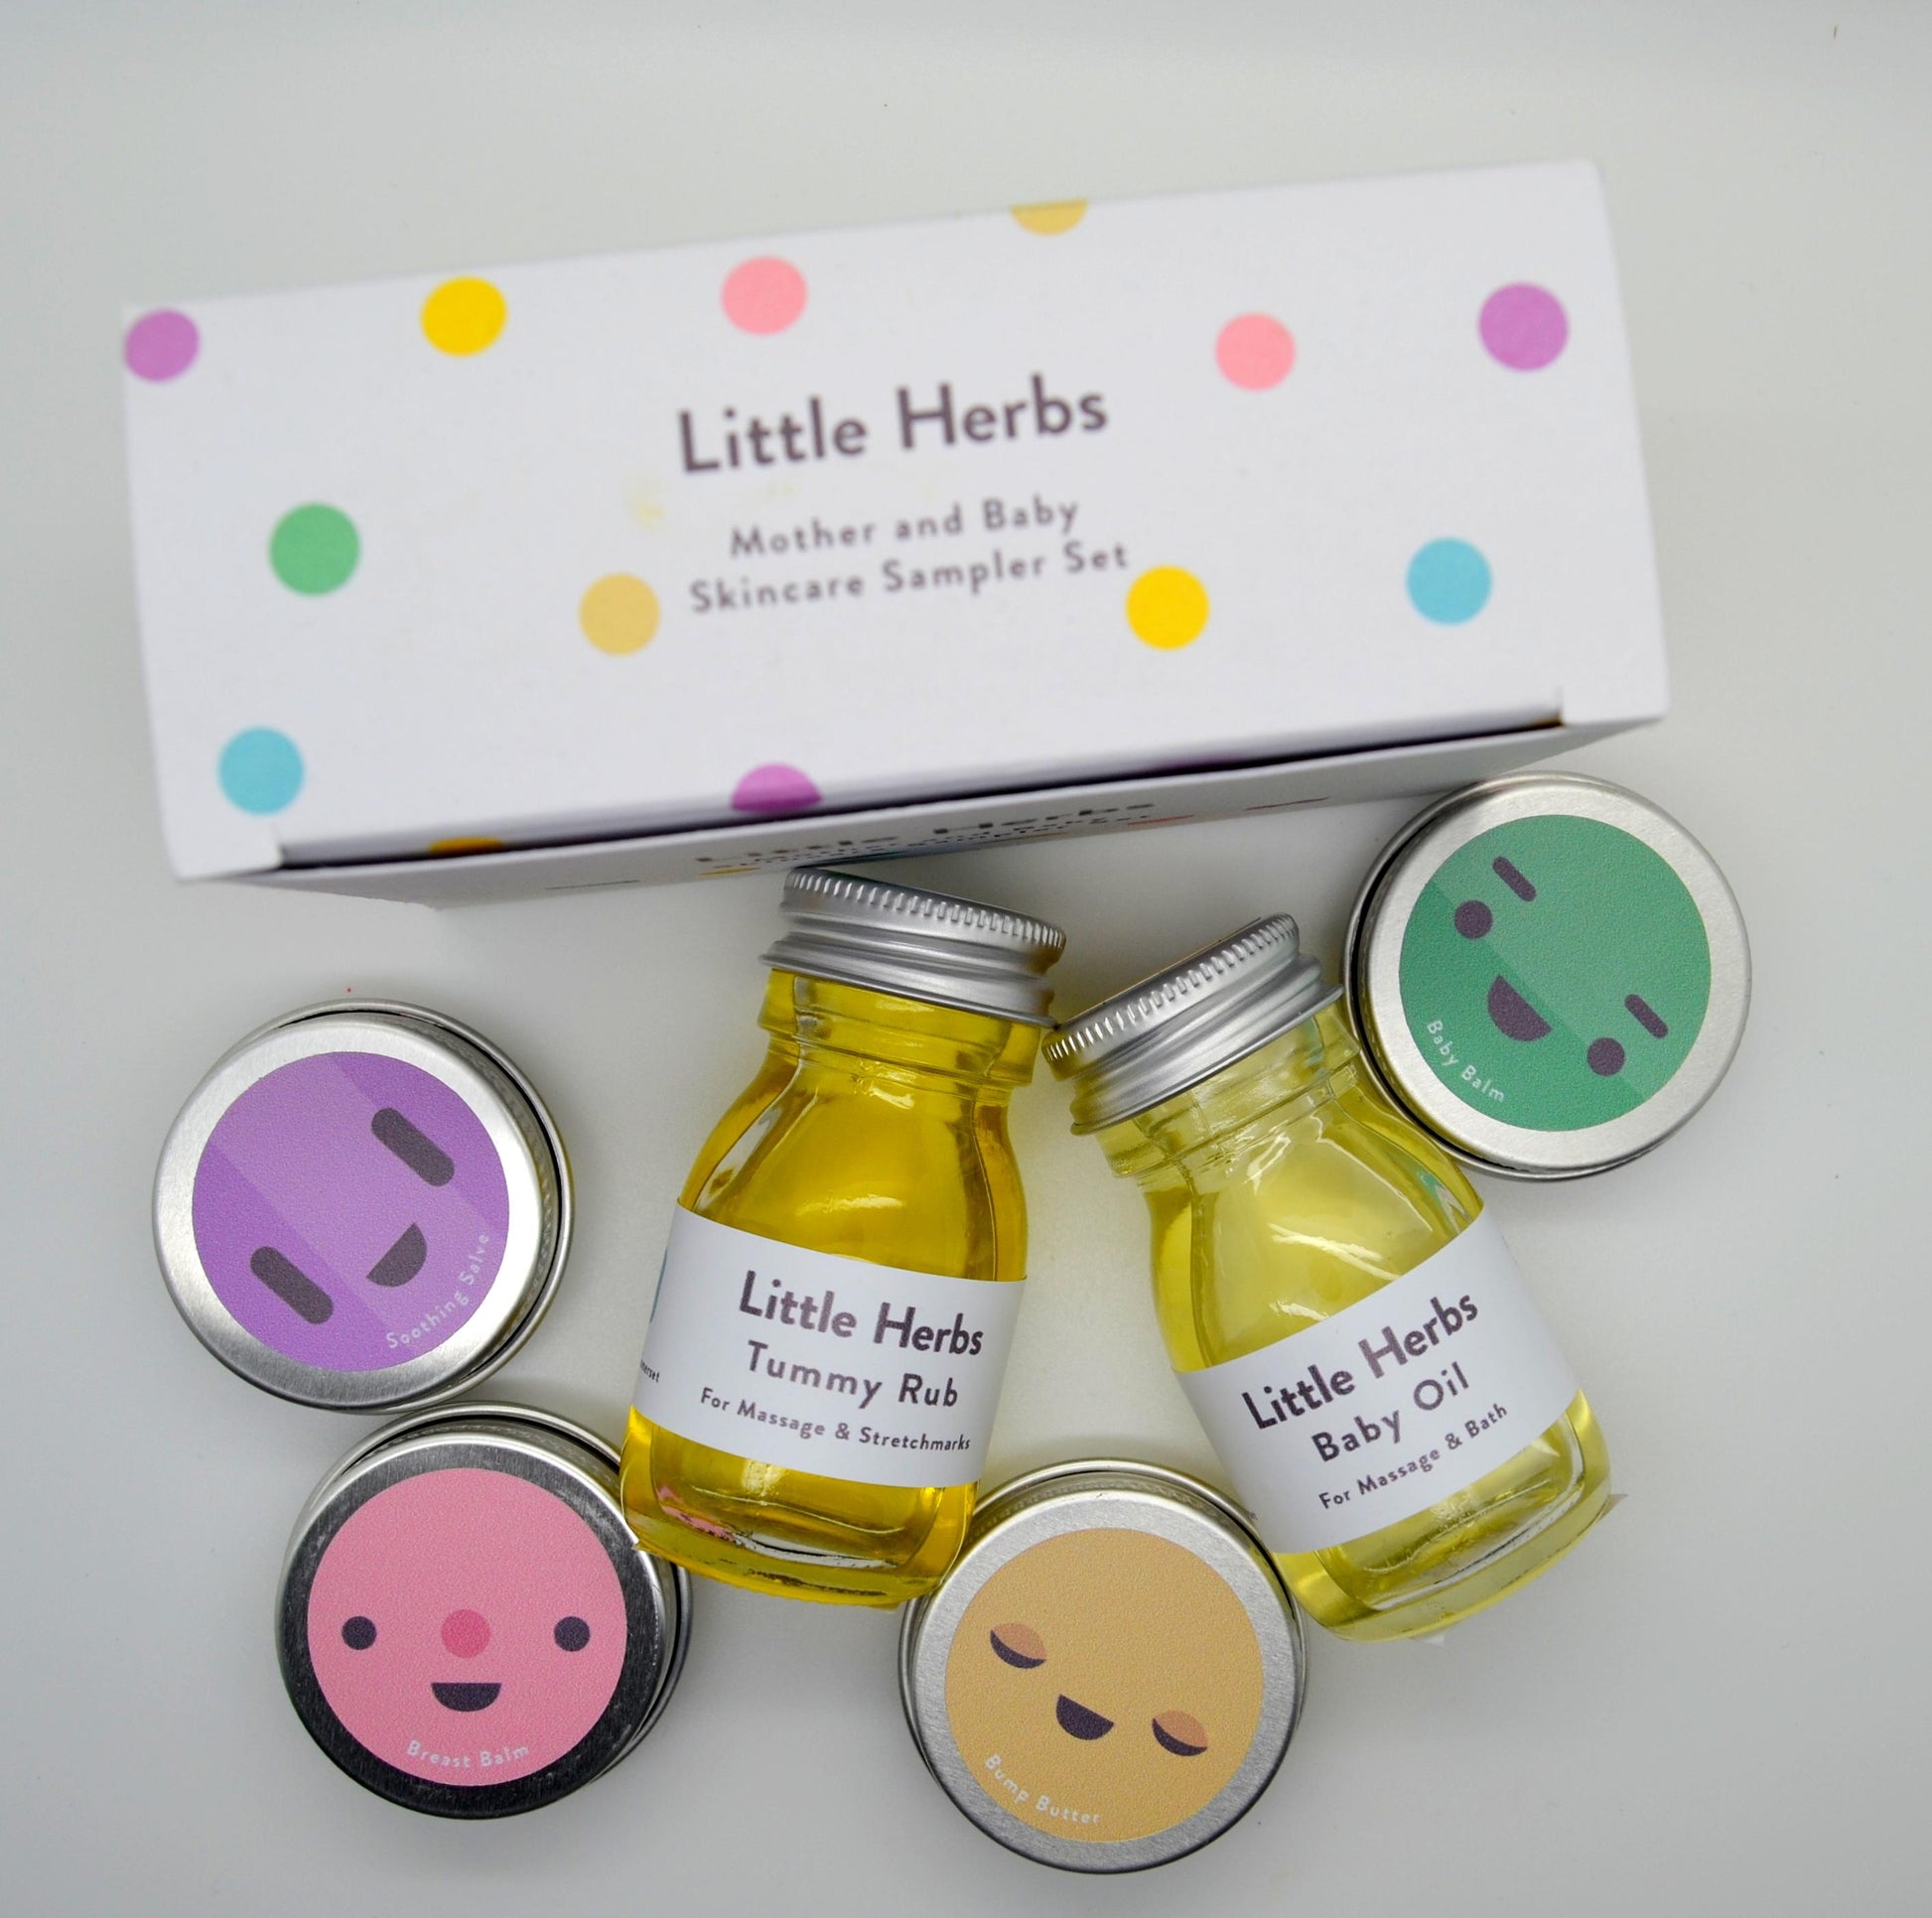 Little Herbs Skincare Sampler Gift Set